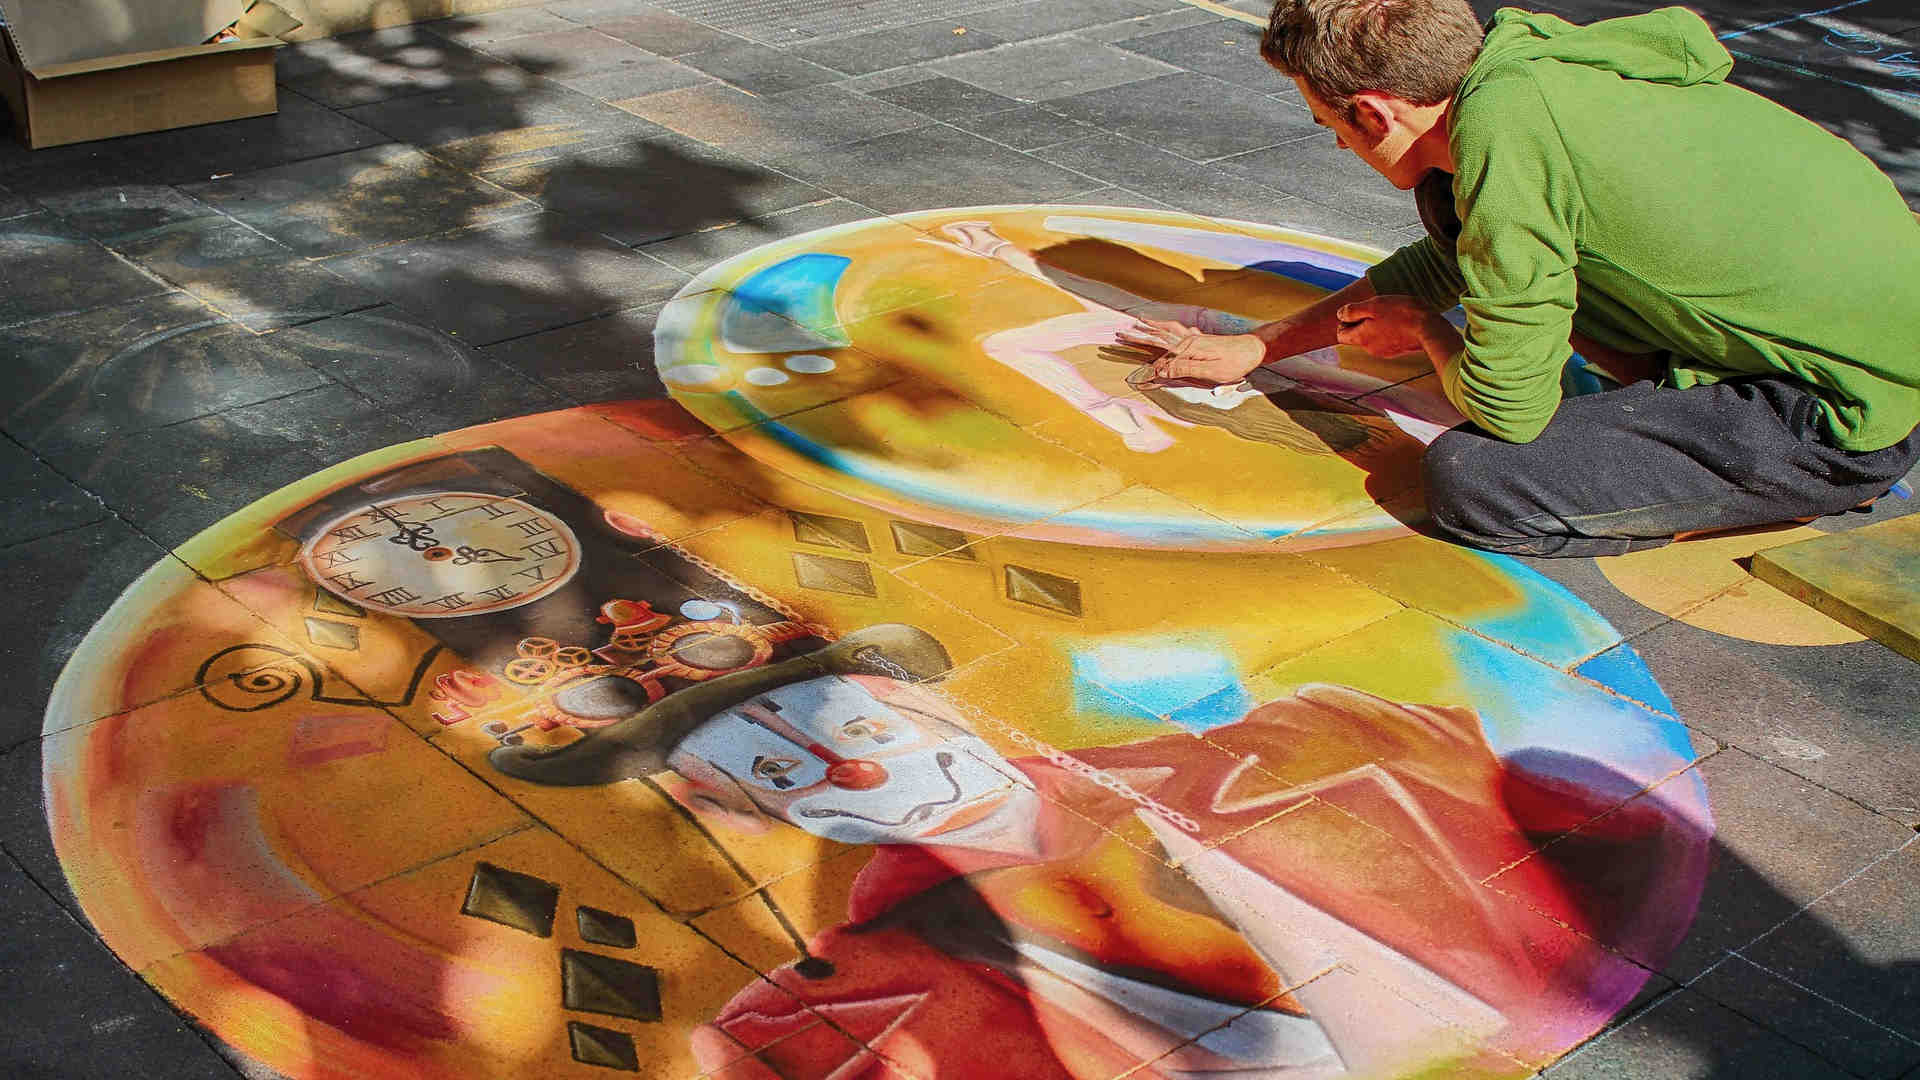 Wir sehen einen Straßenmaler, wie er ein Bild aus seiner Fantasie auf die Platten der Fußgängerzone malt. Ein Teil davon ist schon fertig und zeigt einen Clown.